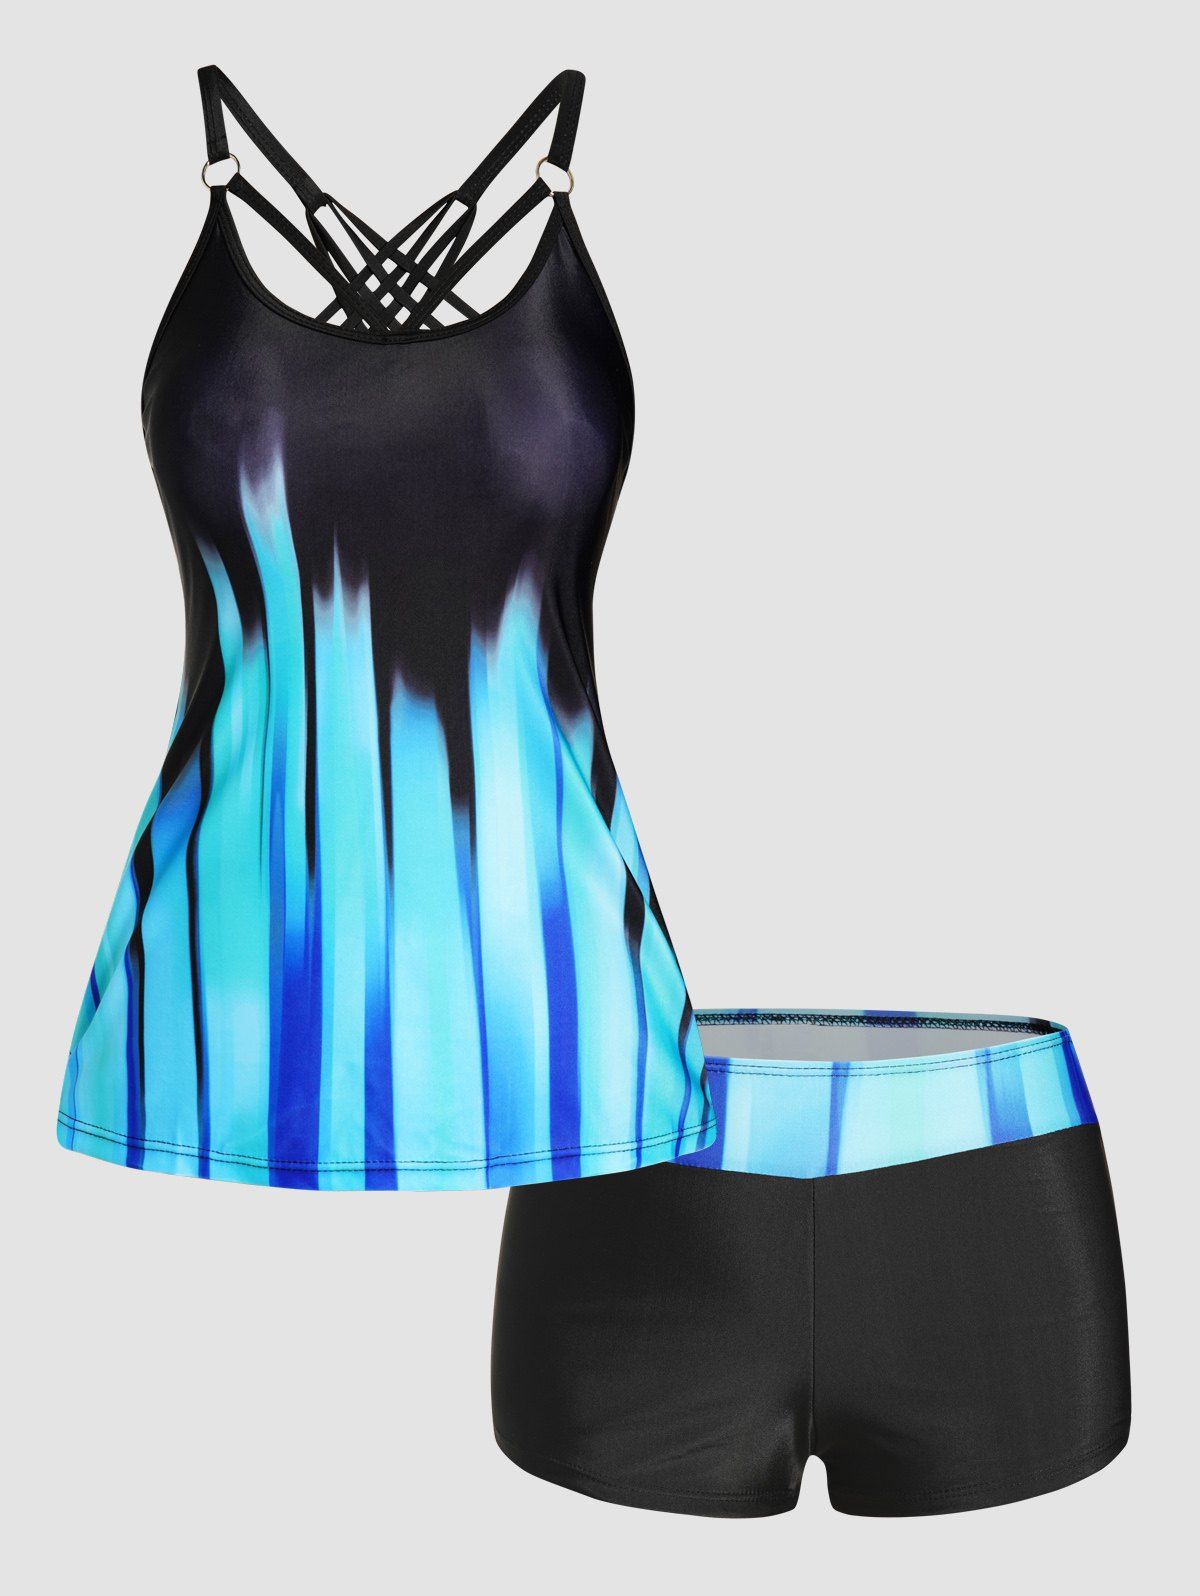 Ombre Stripe Print Tankini Swimsuit Crisscross Padded Tankini Two Piece Swimwear Boyleg Bathing Suit - BLUE L